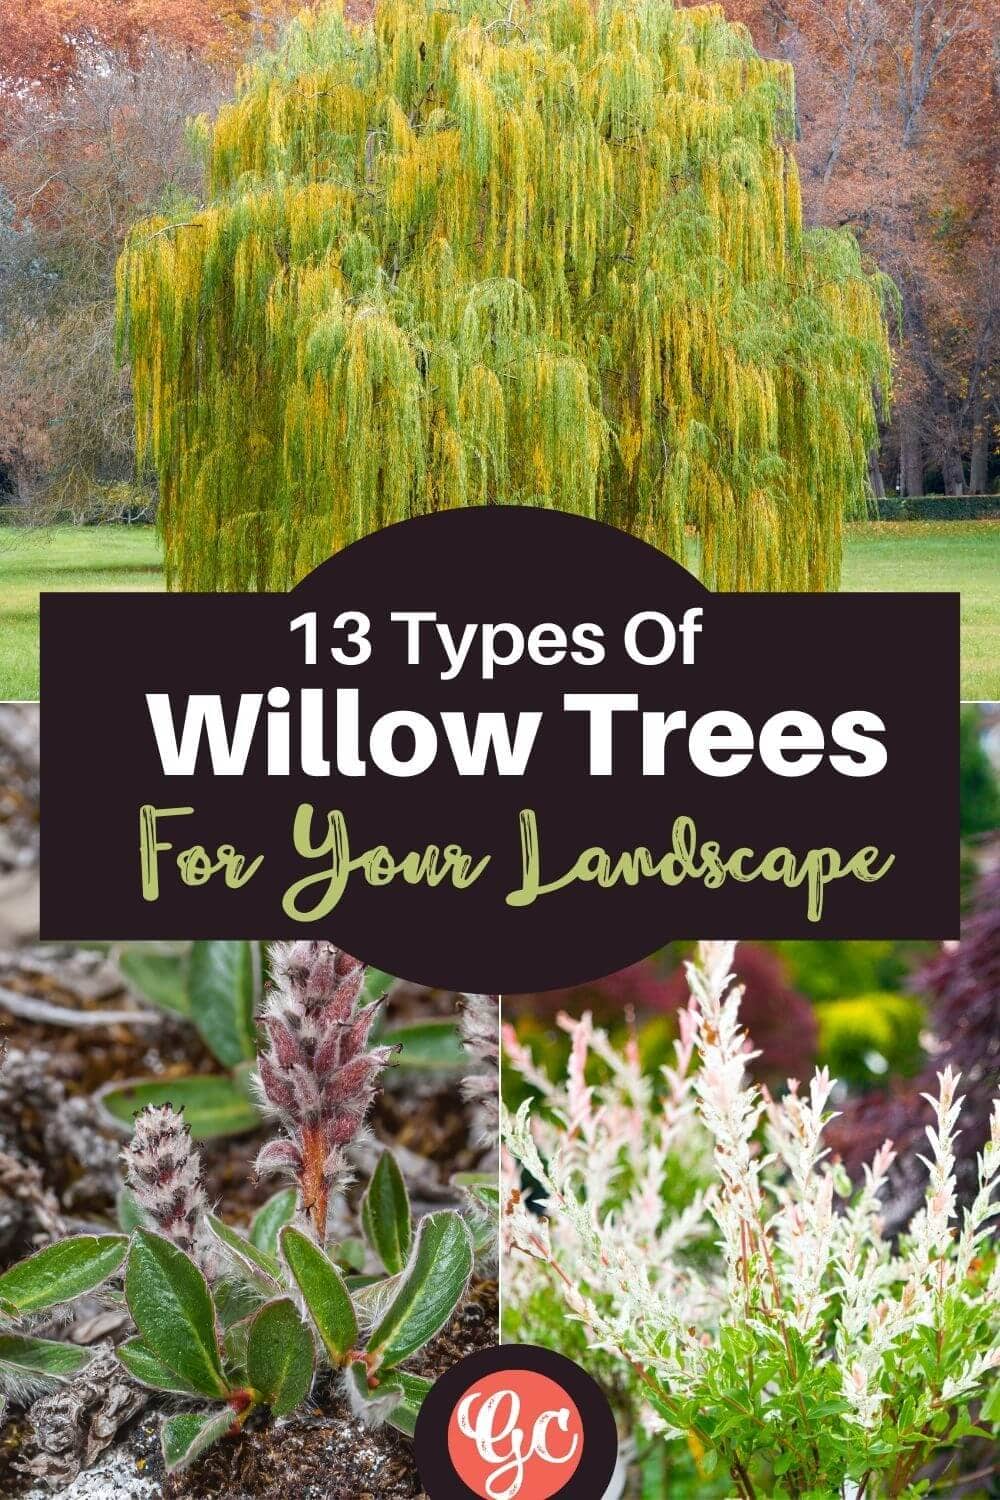  13 tipos de salgueiros e arbustos com fotografias para uma identificação fácil